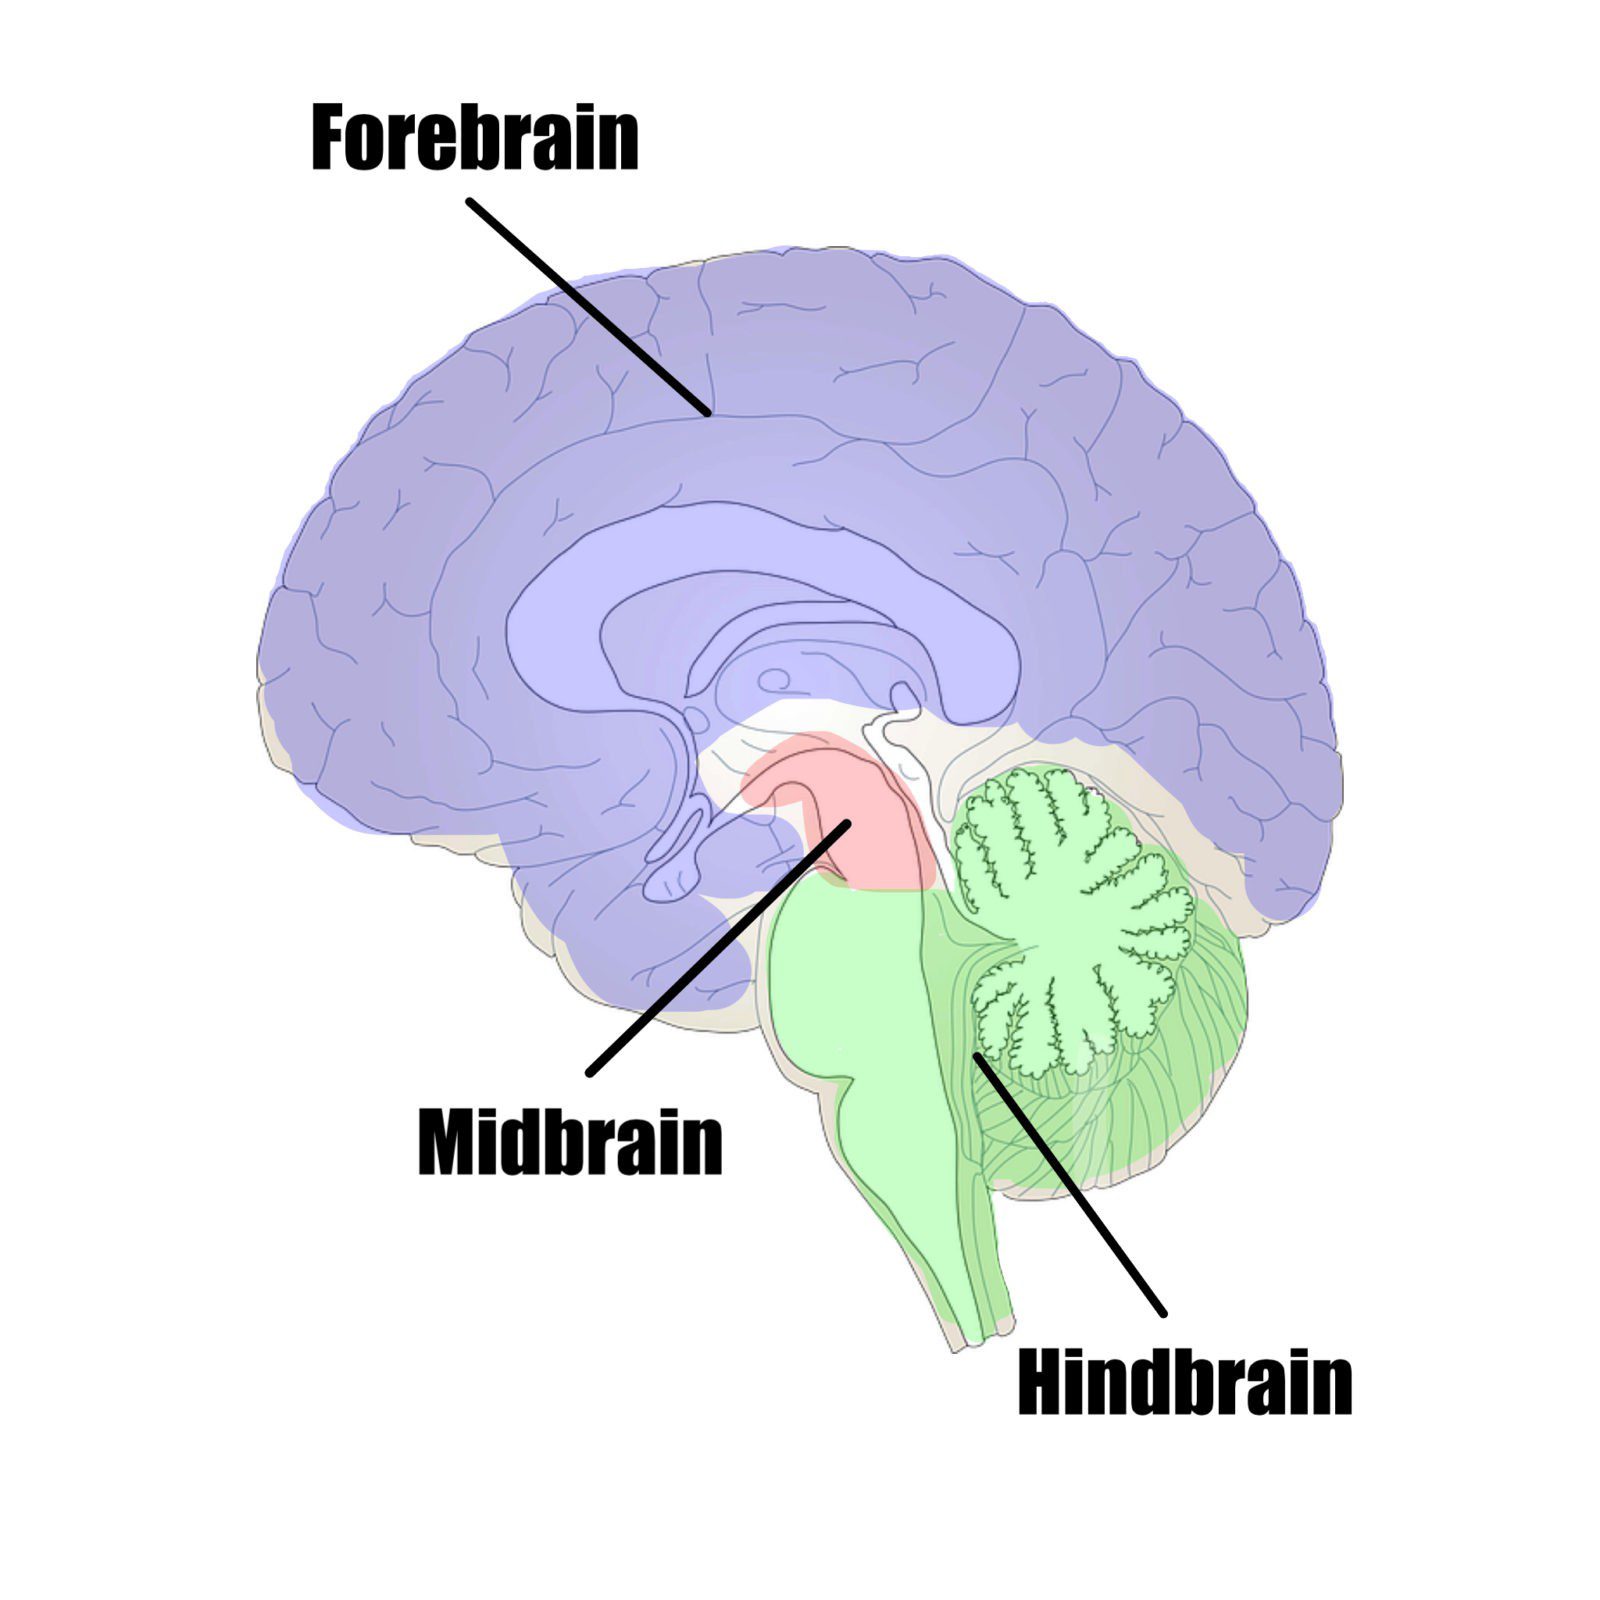 Main brain